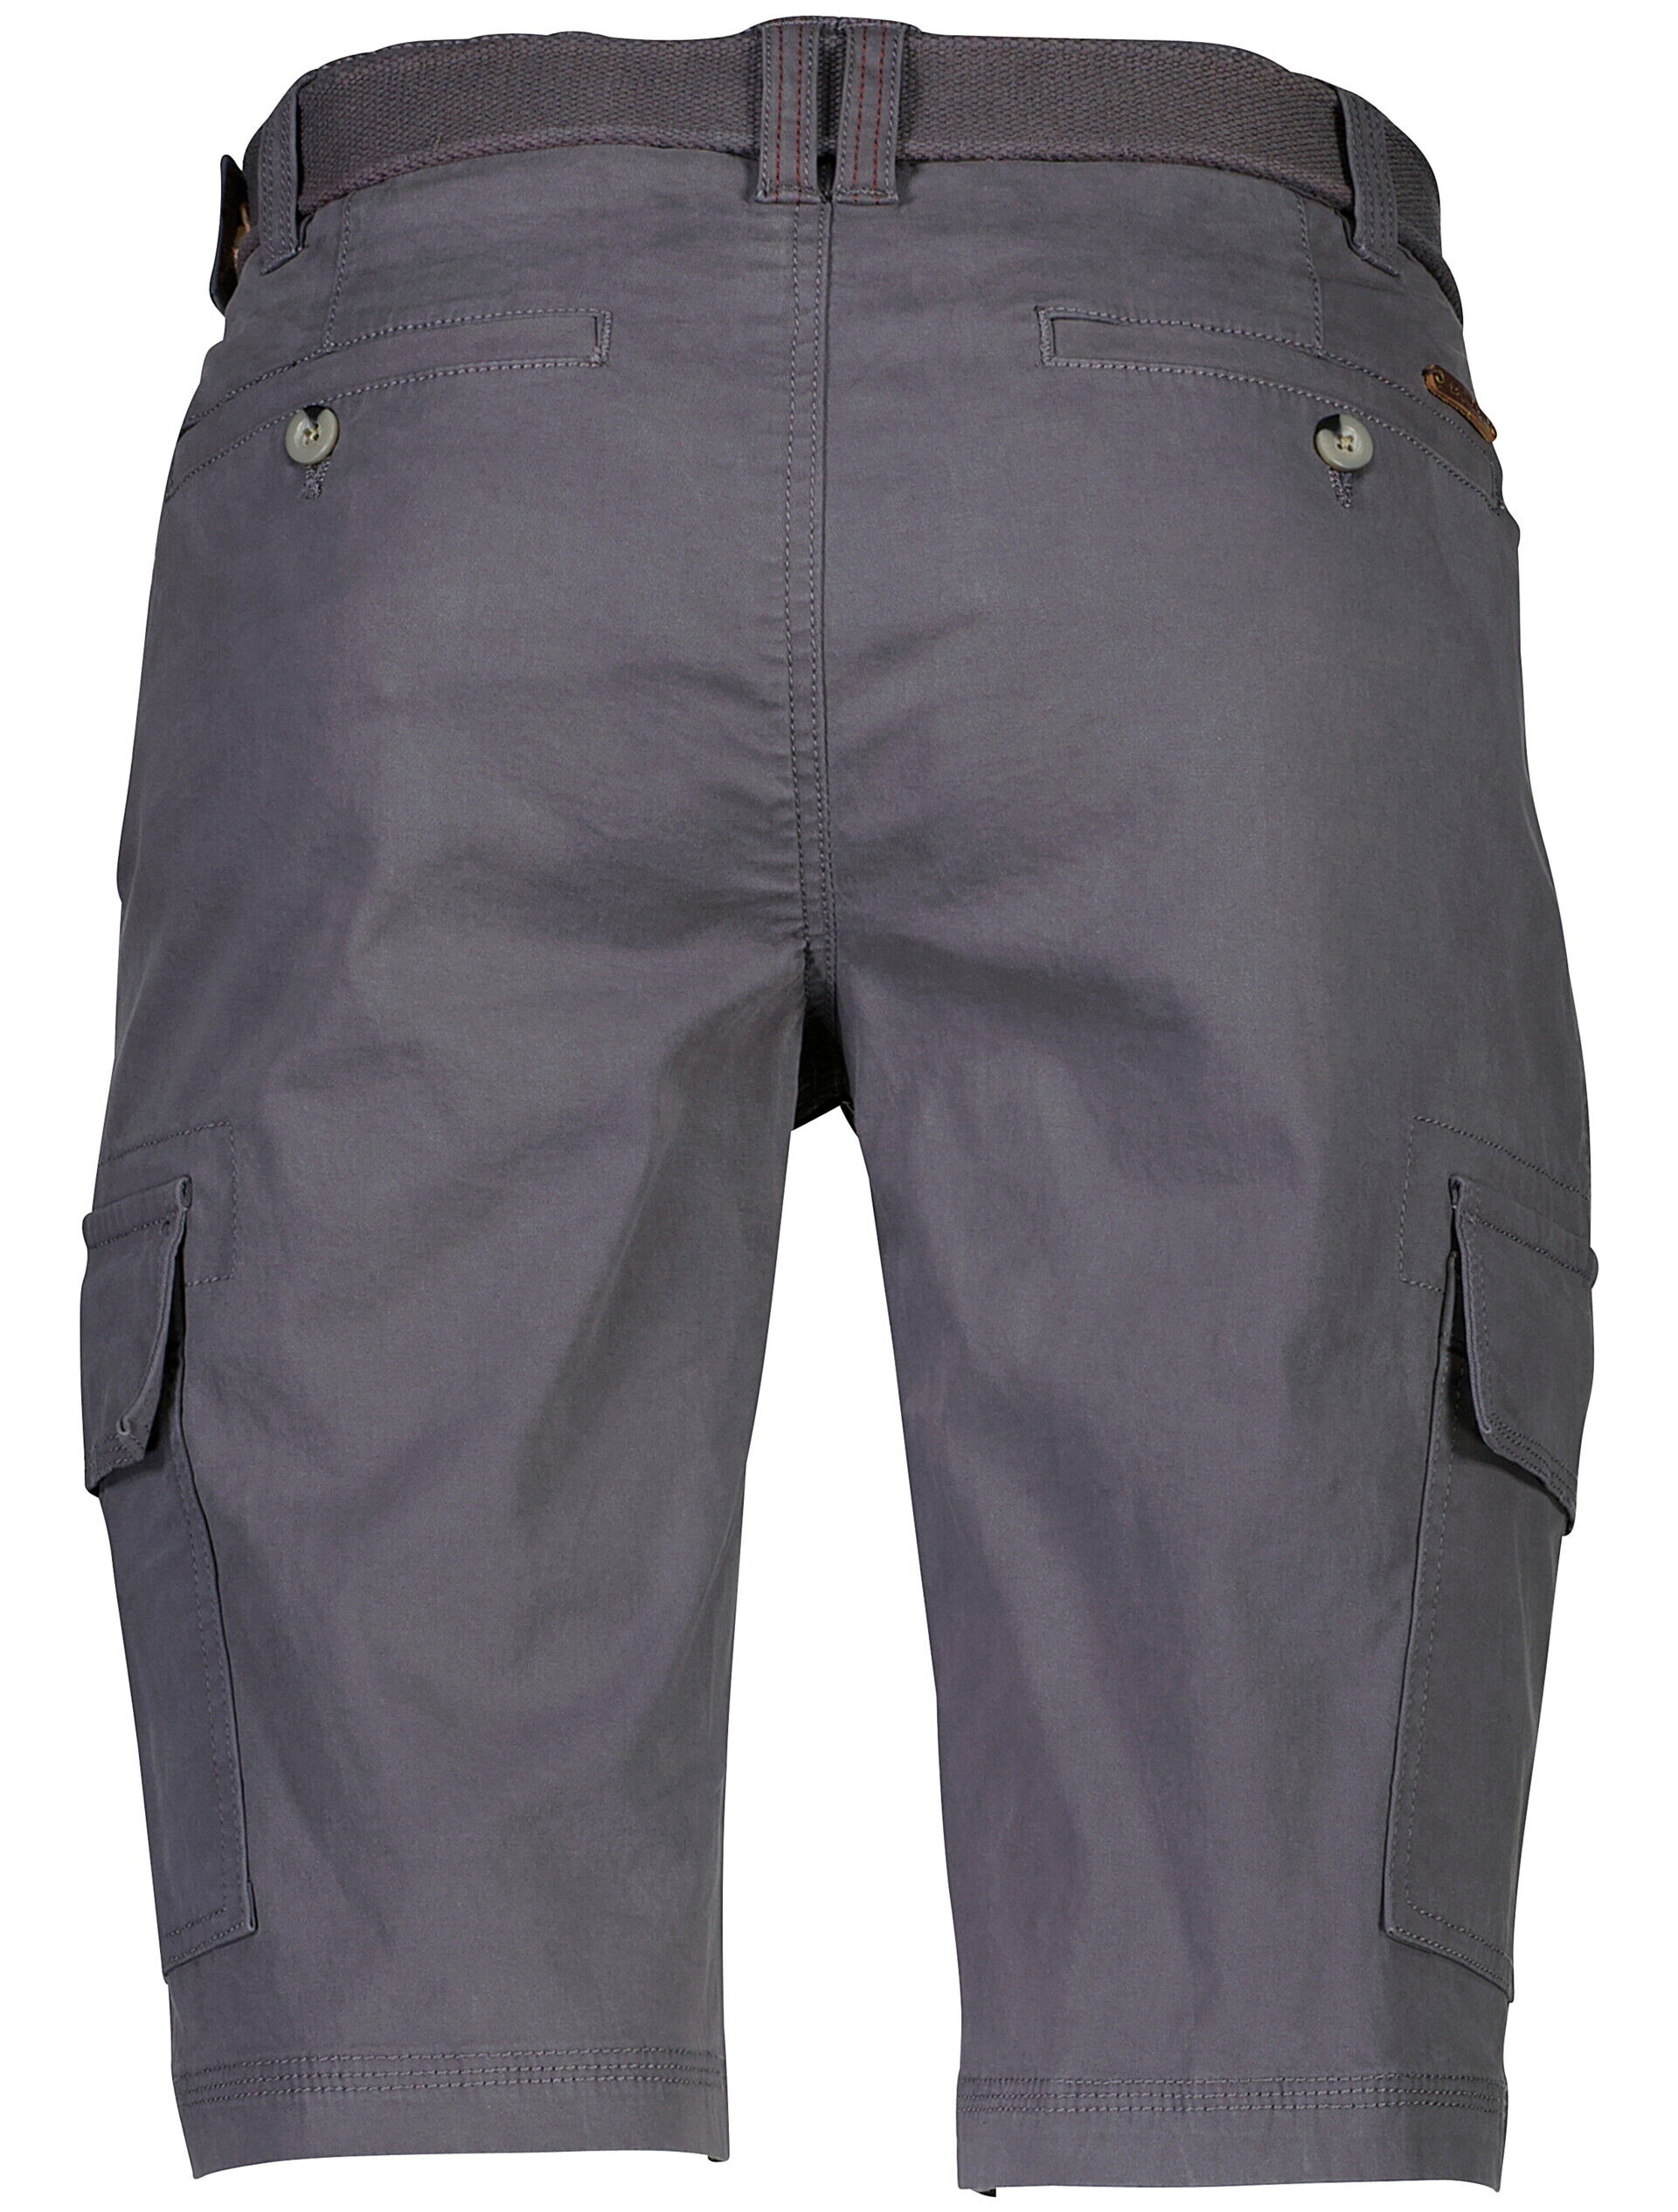 Bison  Cargo shorts 80-512011